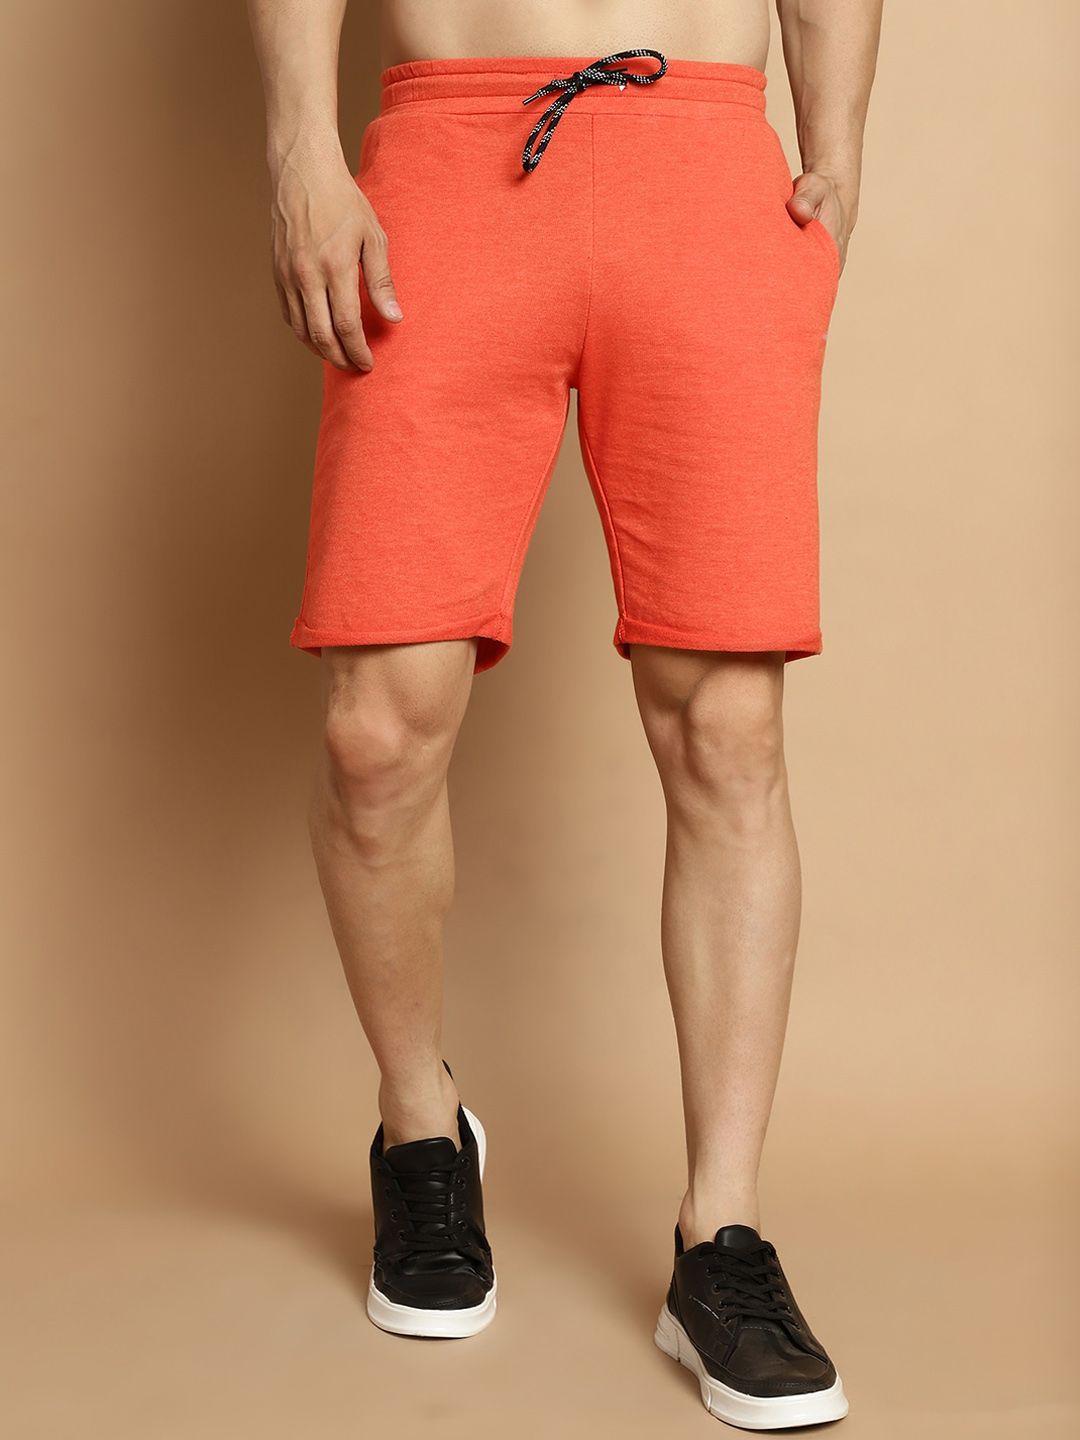 door74 men orange shorts